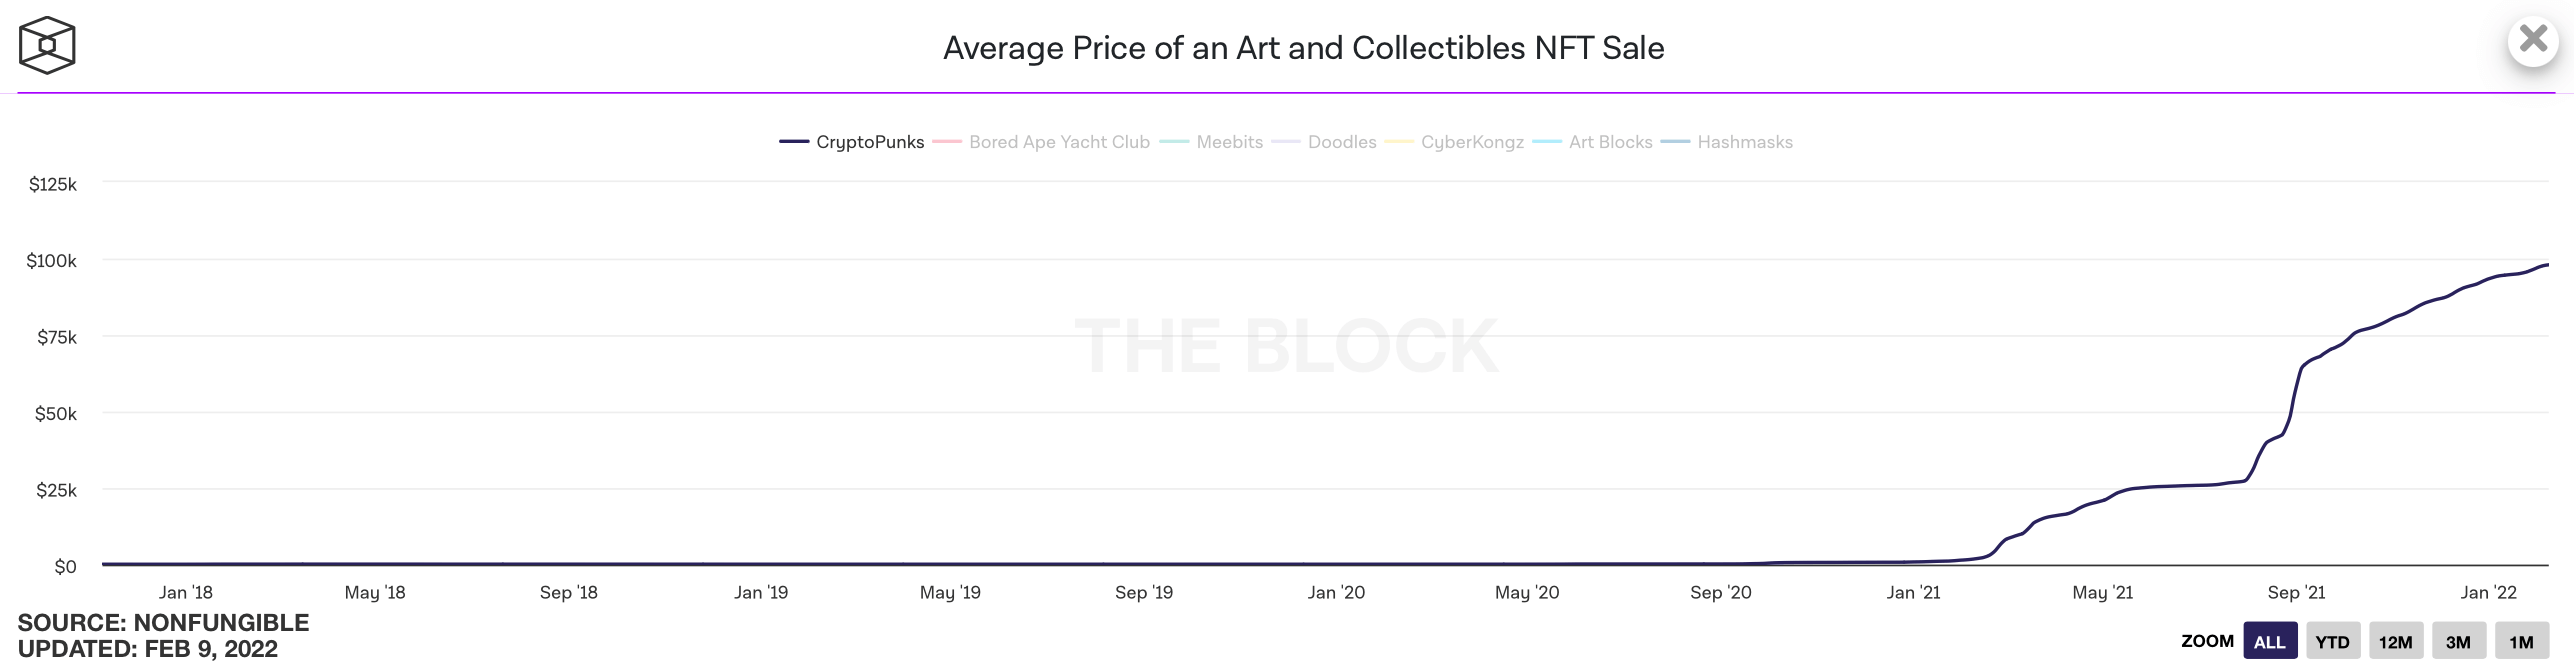 Первое поколение самой популярной NFT-коллекции пропало с платформы OpenSea. В чём причина? Средняя стоимость продажи NFT-токена из линейки «Криптопанки». Фото.